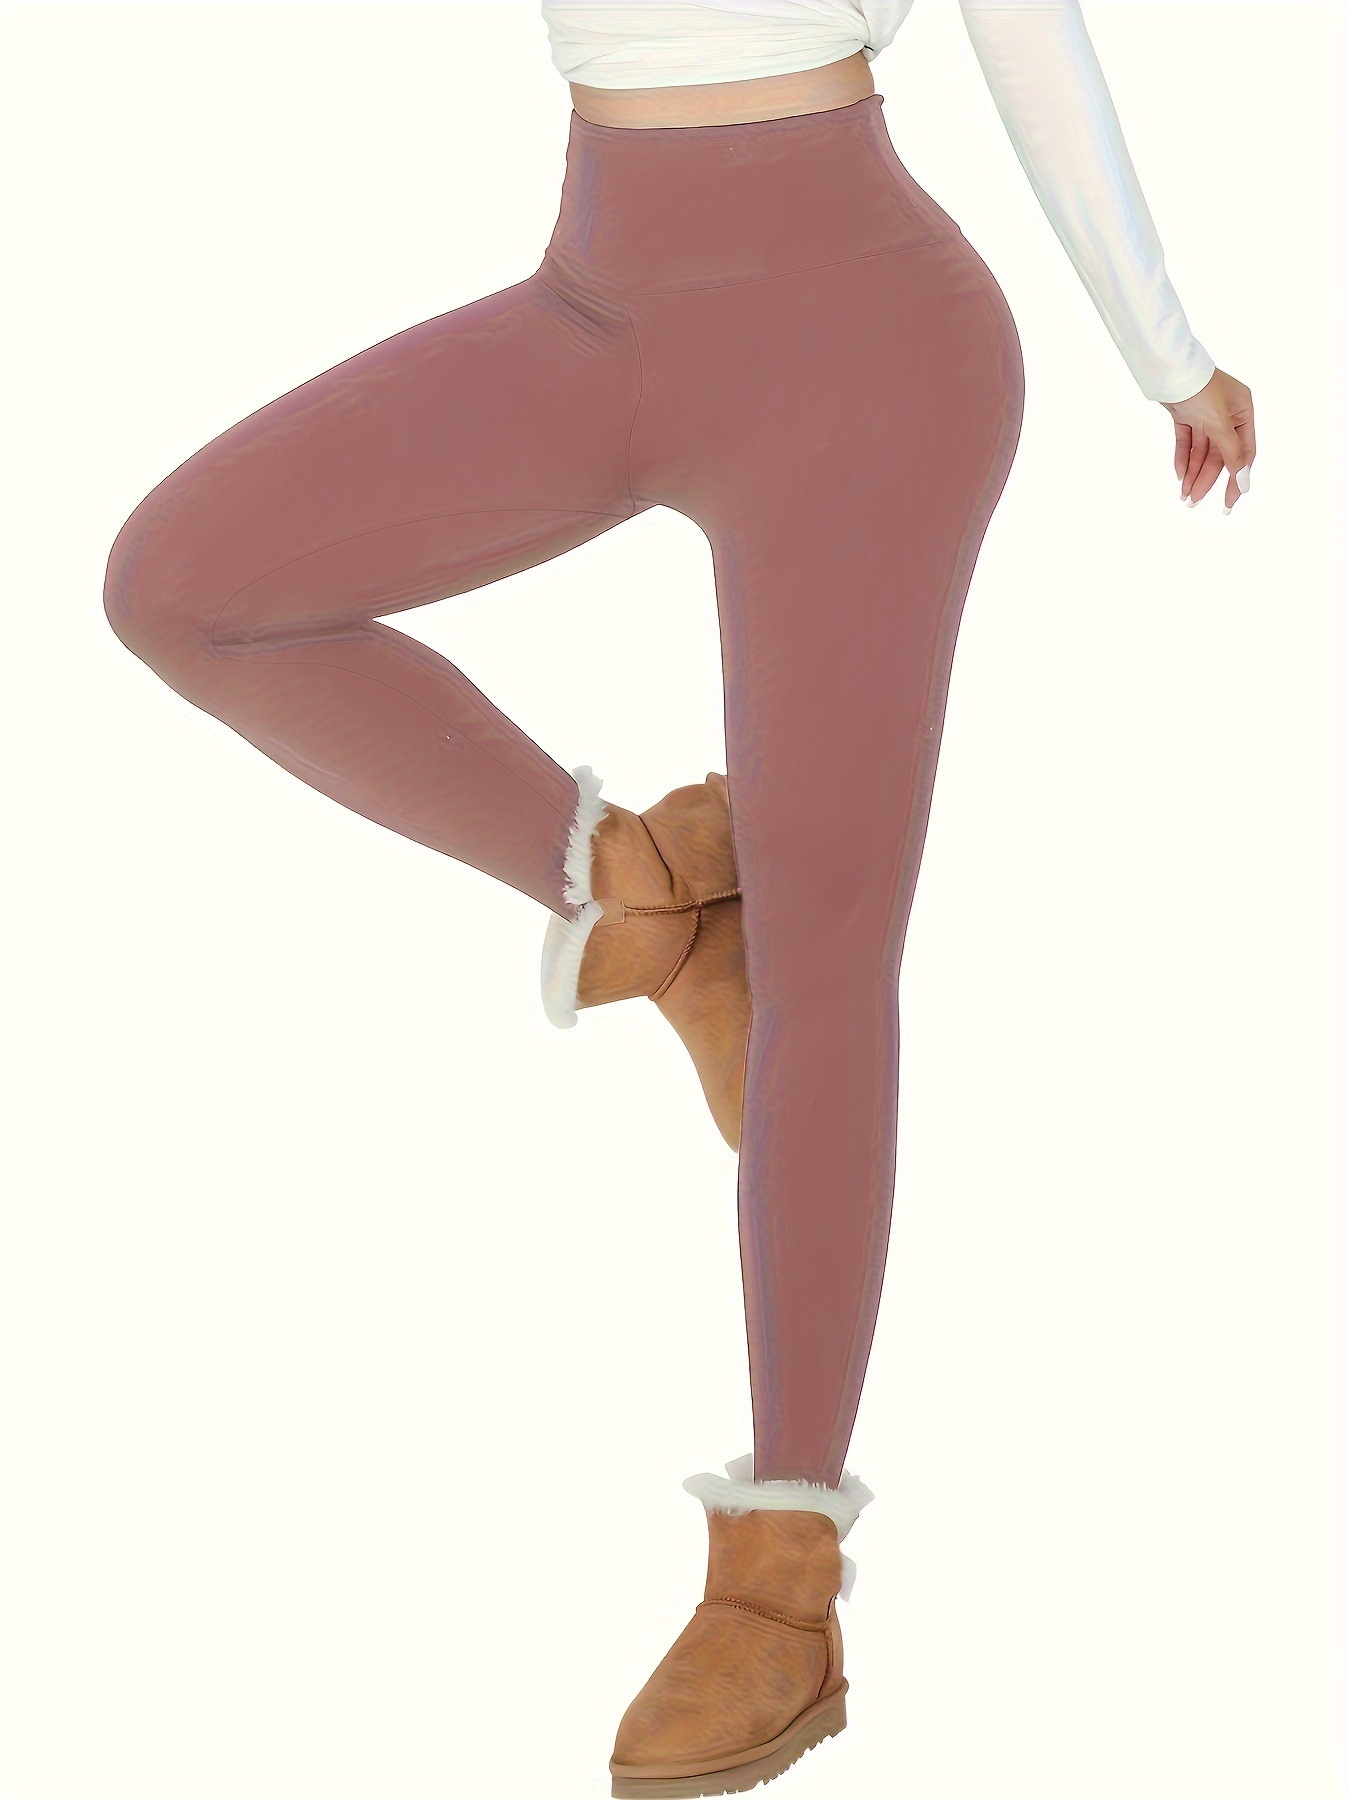 Leggings con forro polar Ropa interior térmica funcional de cintura alta  para mujer con forro polar Leggings de invierno Pantalones de yoga térmicos